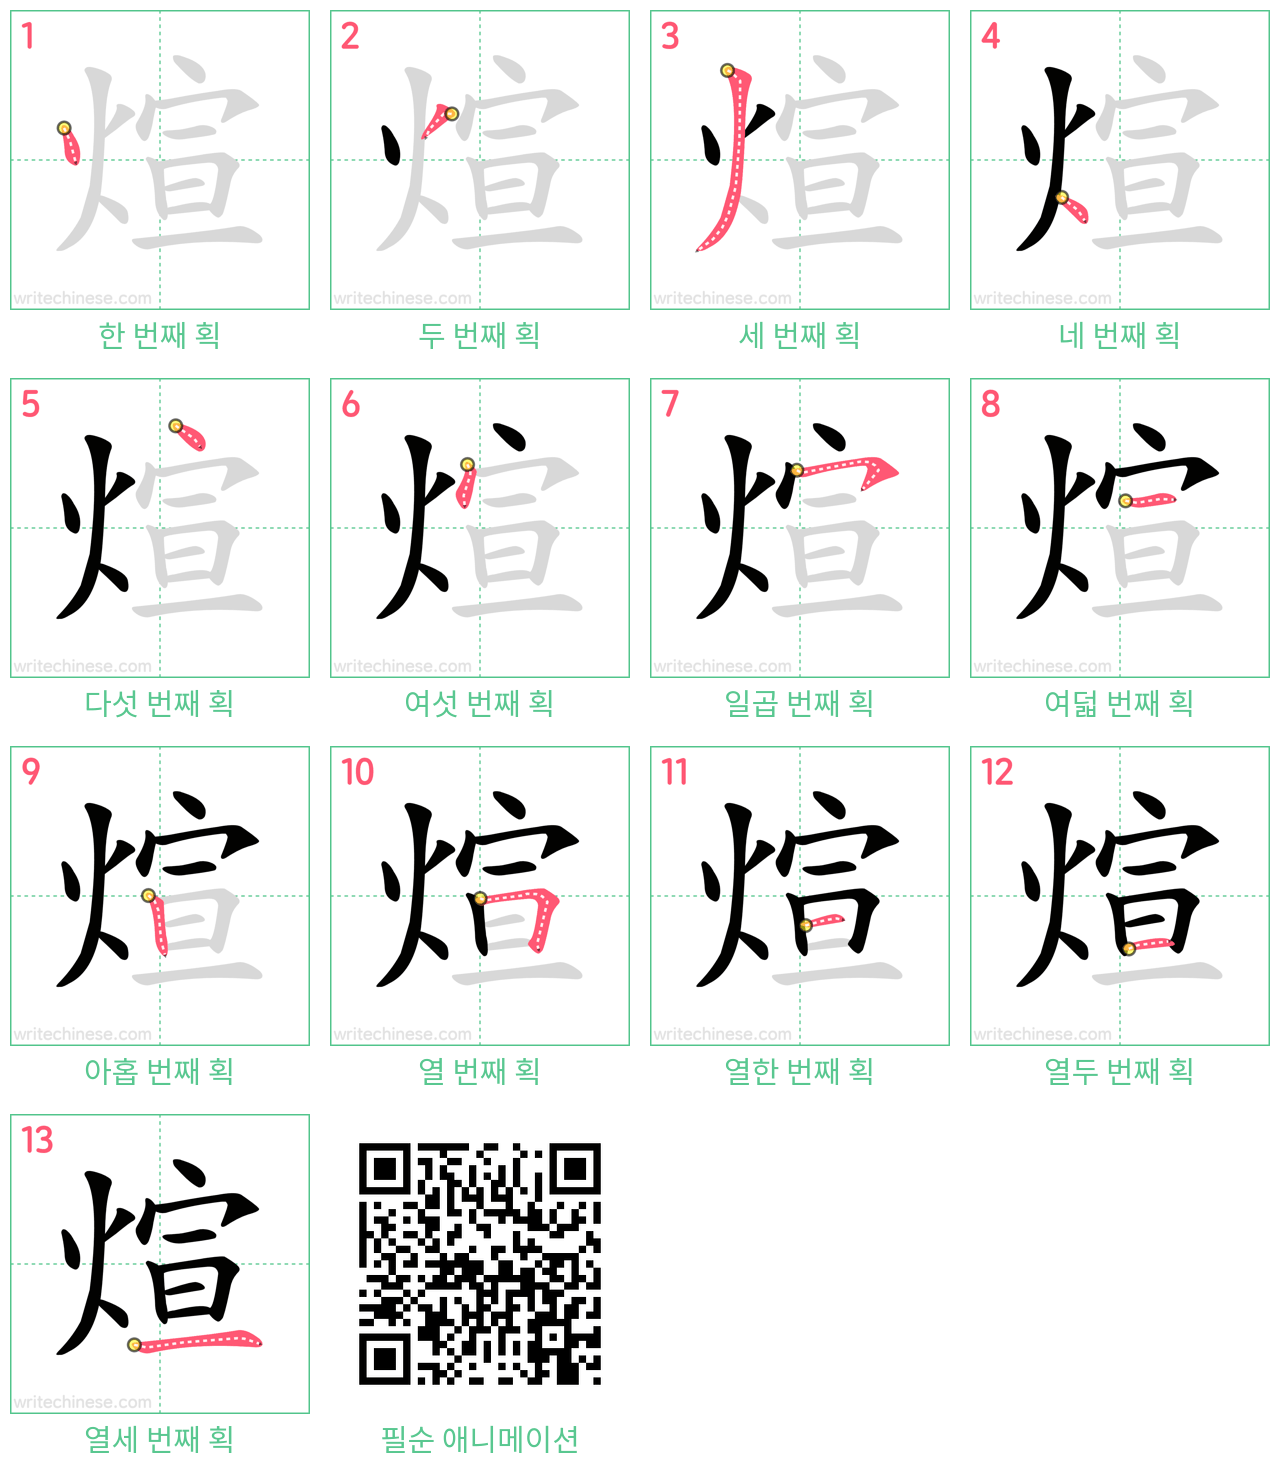 煊 step-by-step stroke order diagrams